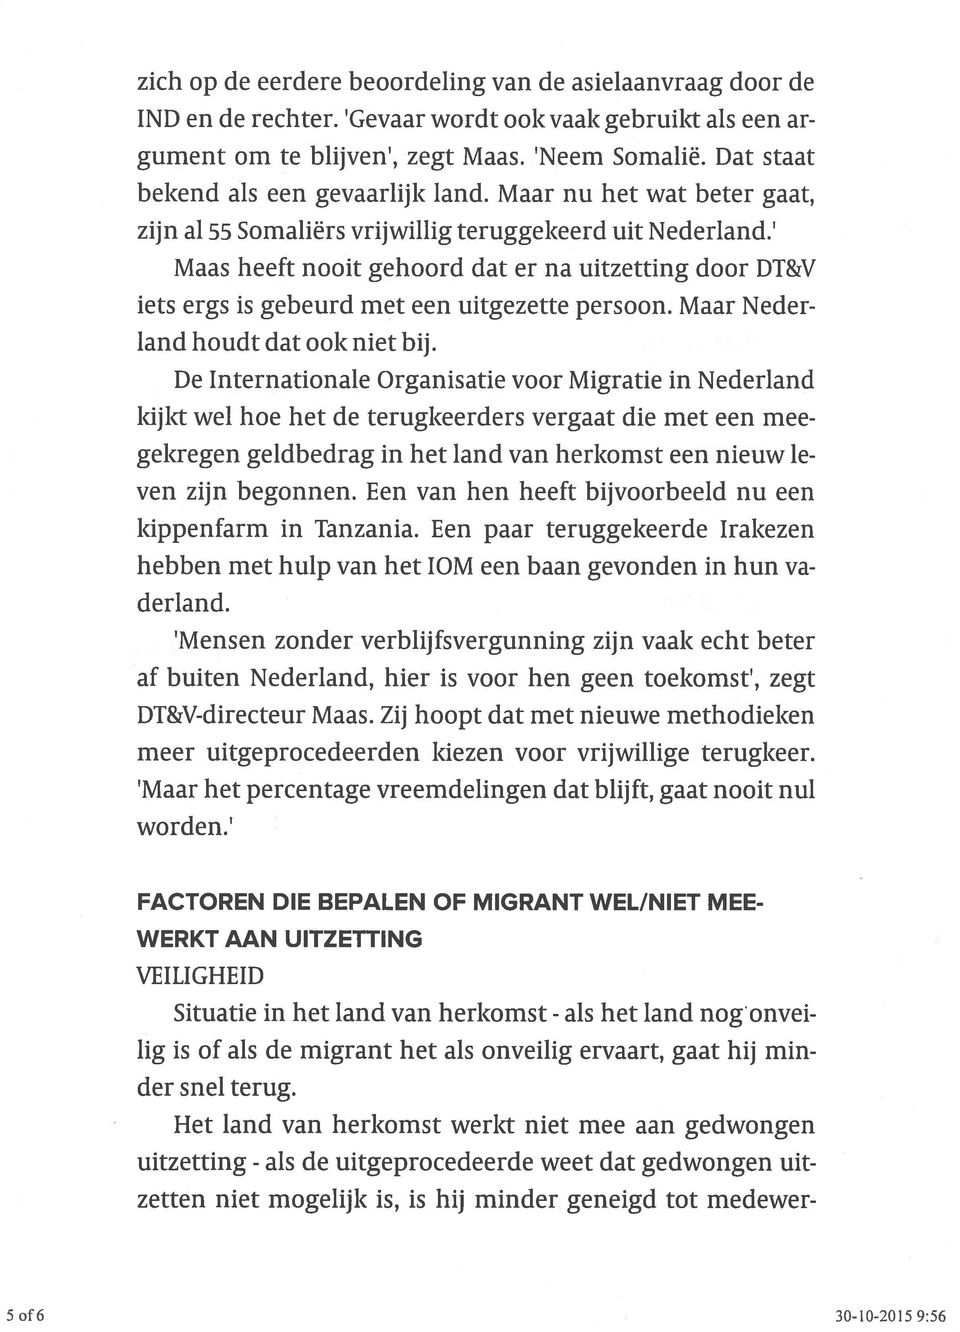 Dat staat bekend als een gevaarlijk land. Maar nu het wat beter gaat, zijn al 55 Somaliërs vrijwillig teruggekeerd uit Nederland.